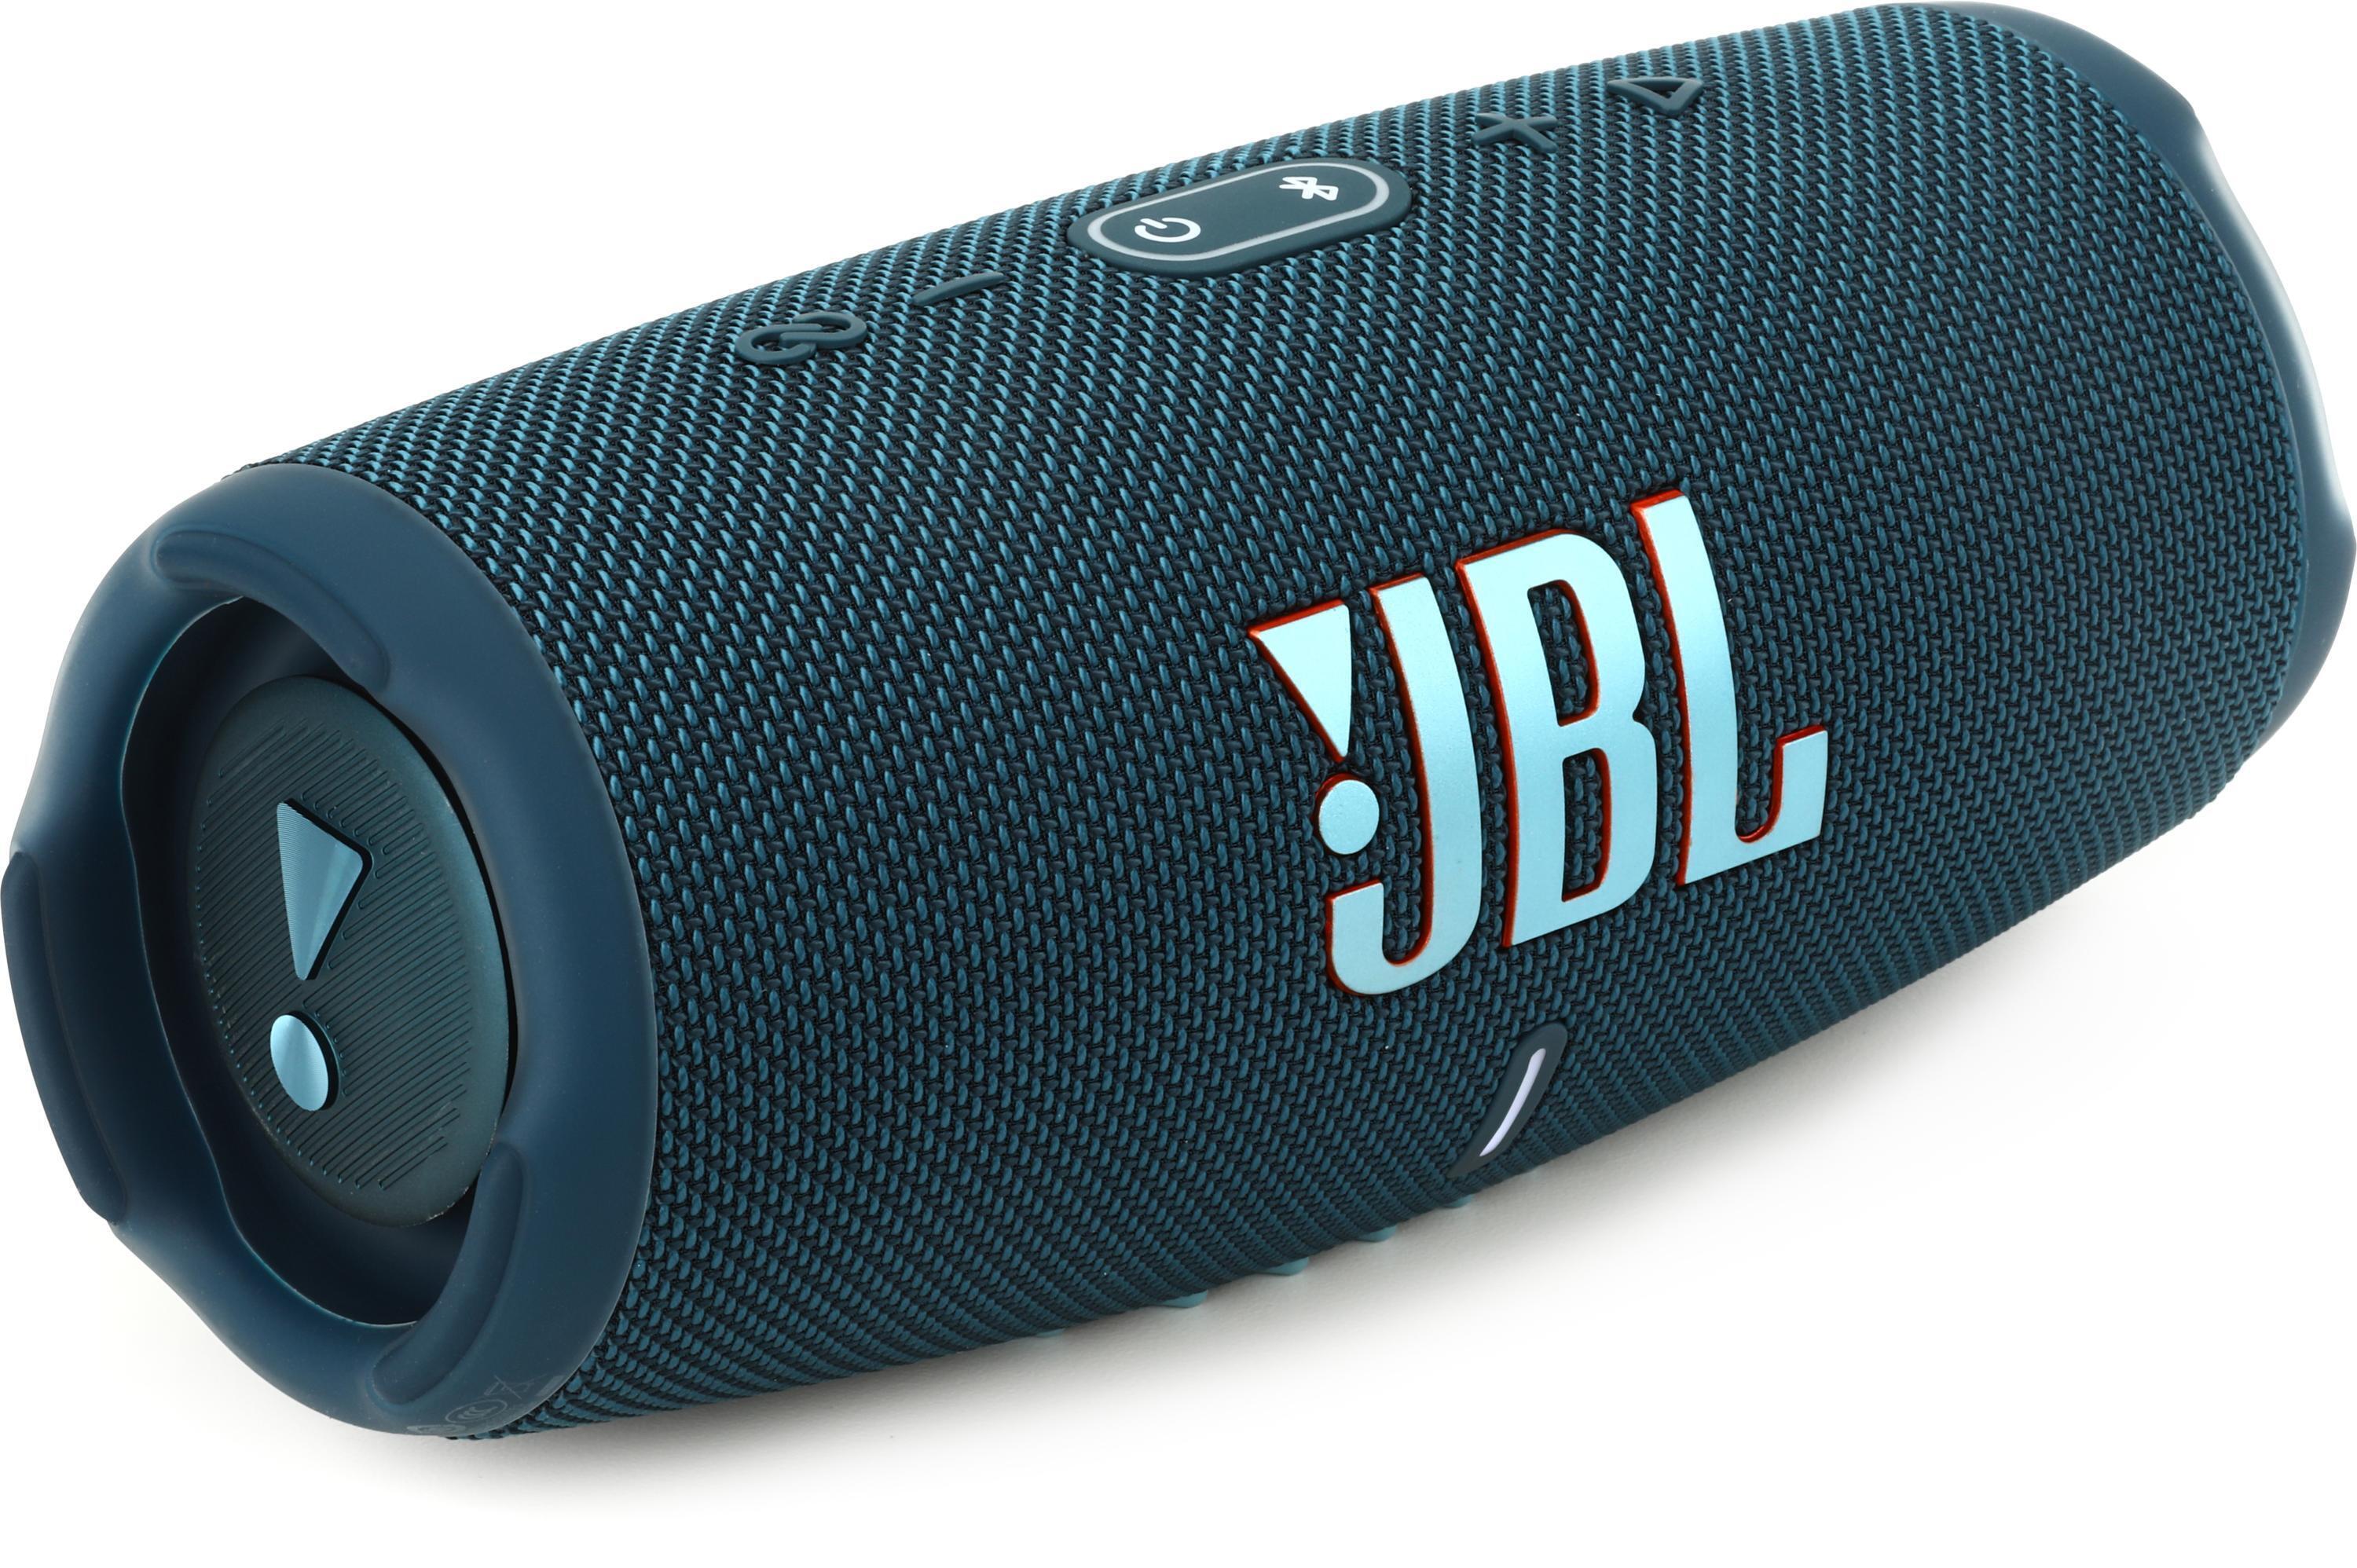 JBL CHARGE 5 BLUE